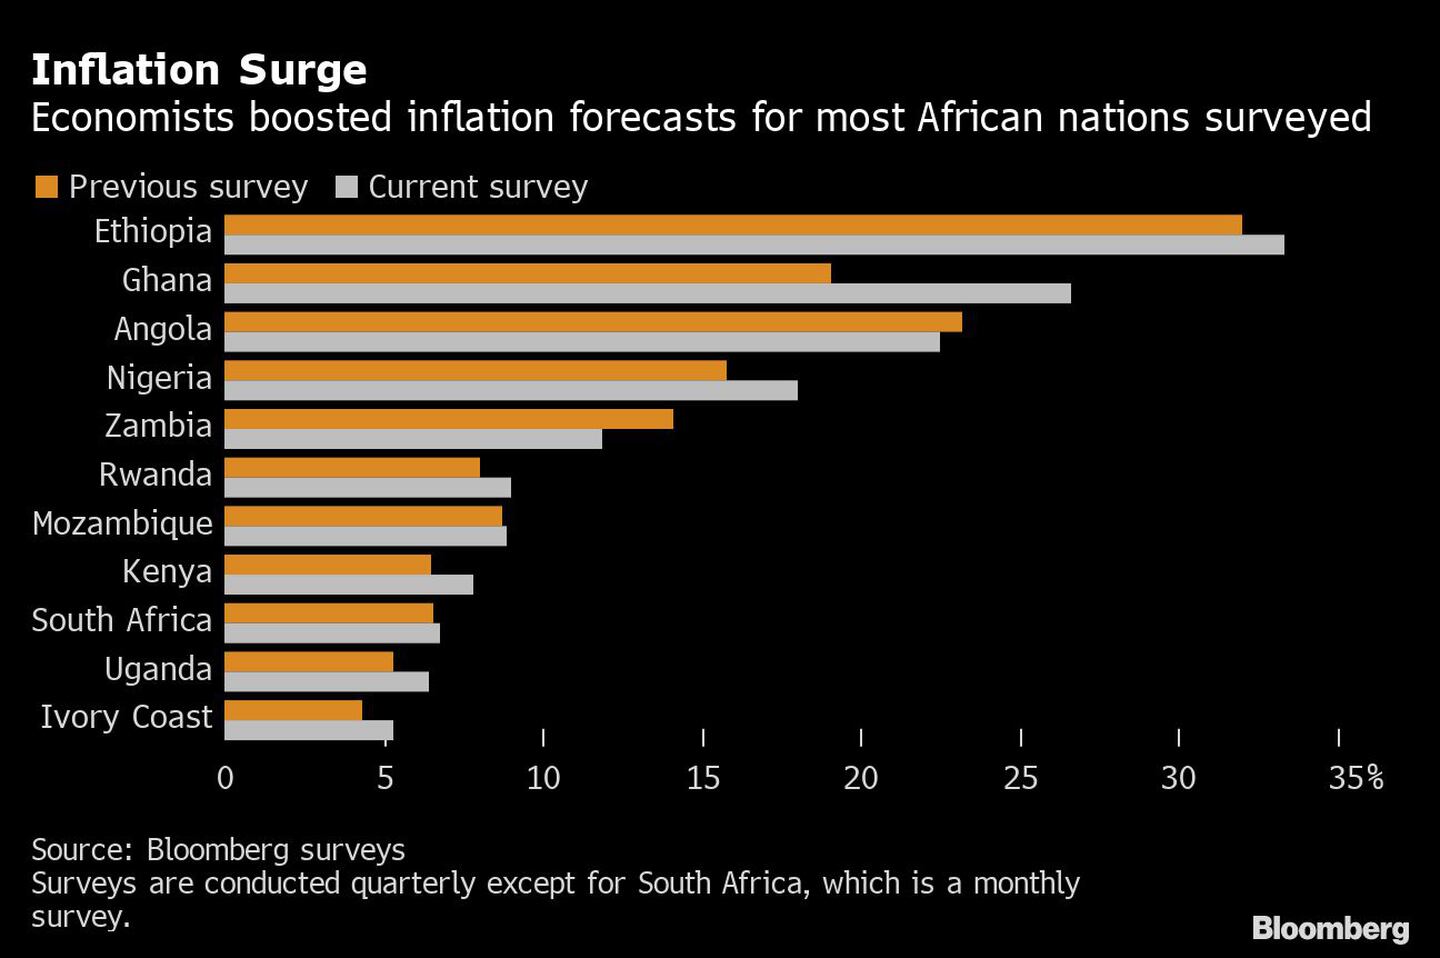 Aumento de la inflación | Los economistas aumentaron las previsiones de inflación para la mayoría de los países africanos encuestadosdfd